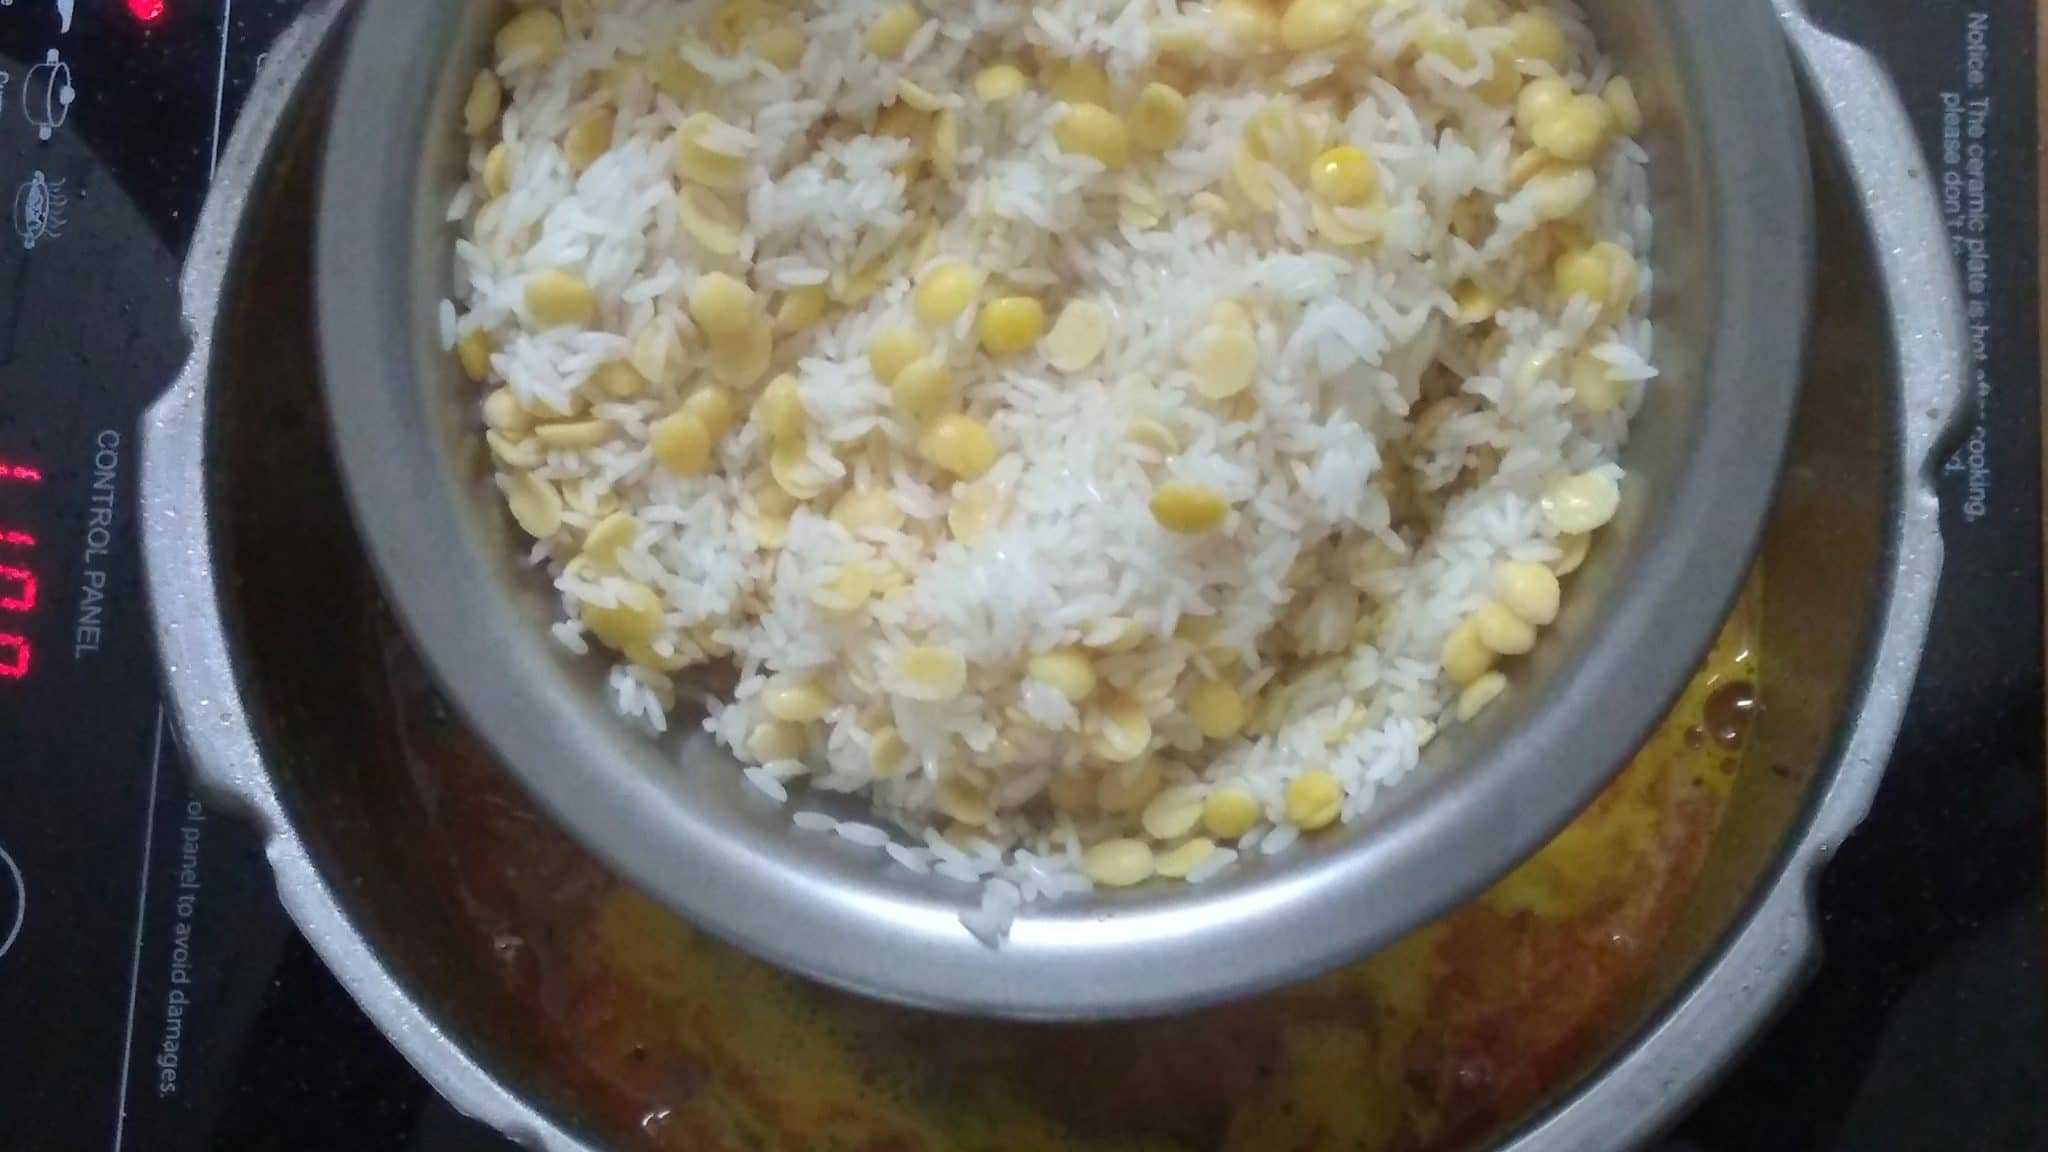  paruppu sadam recipe in tamil